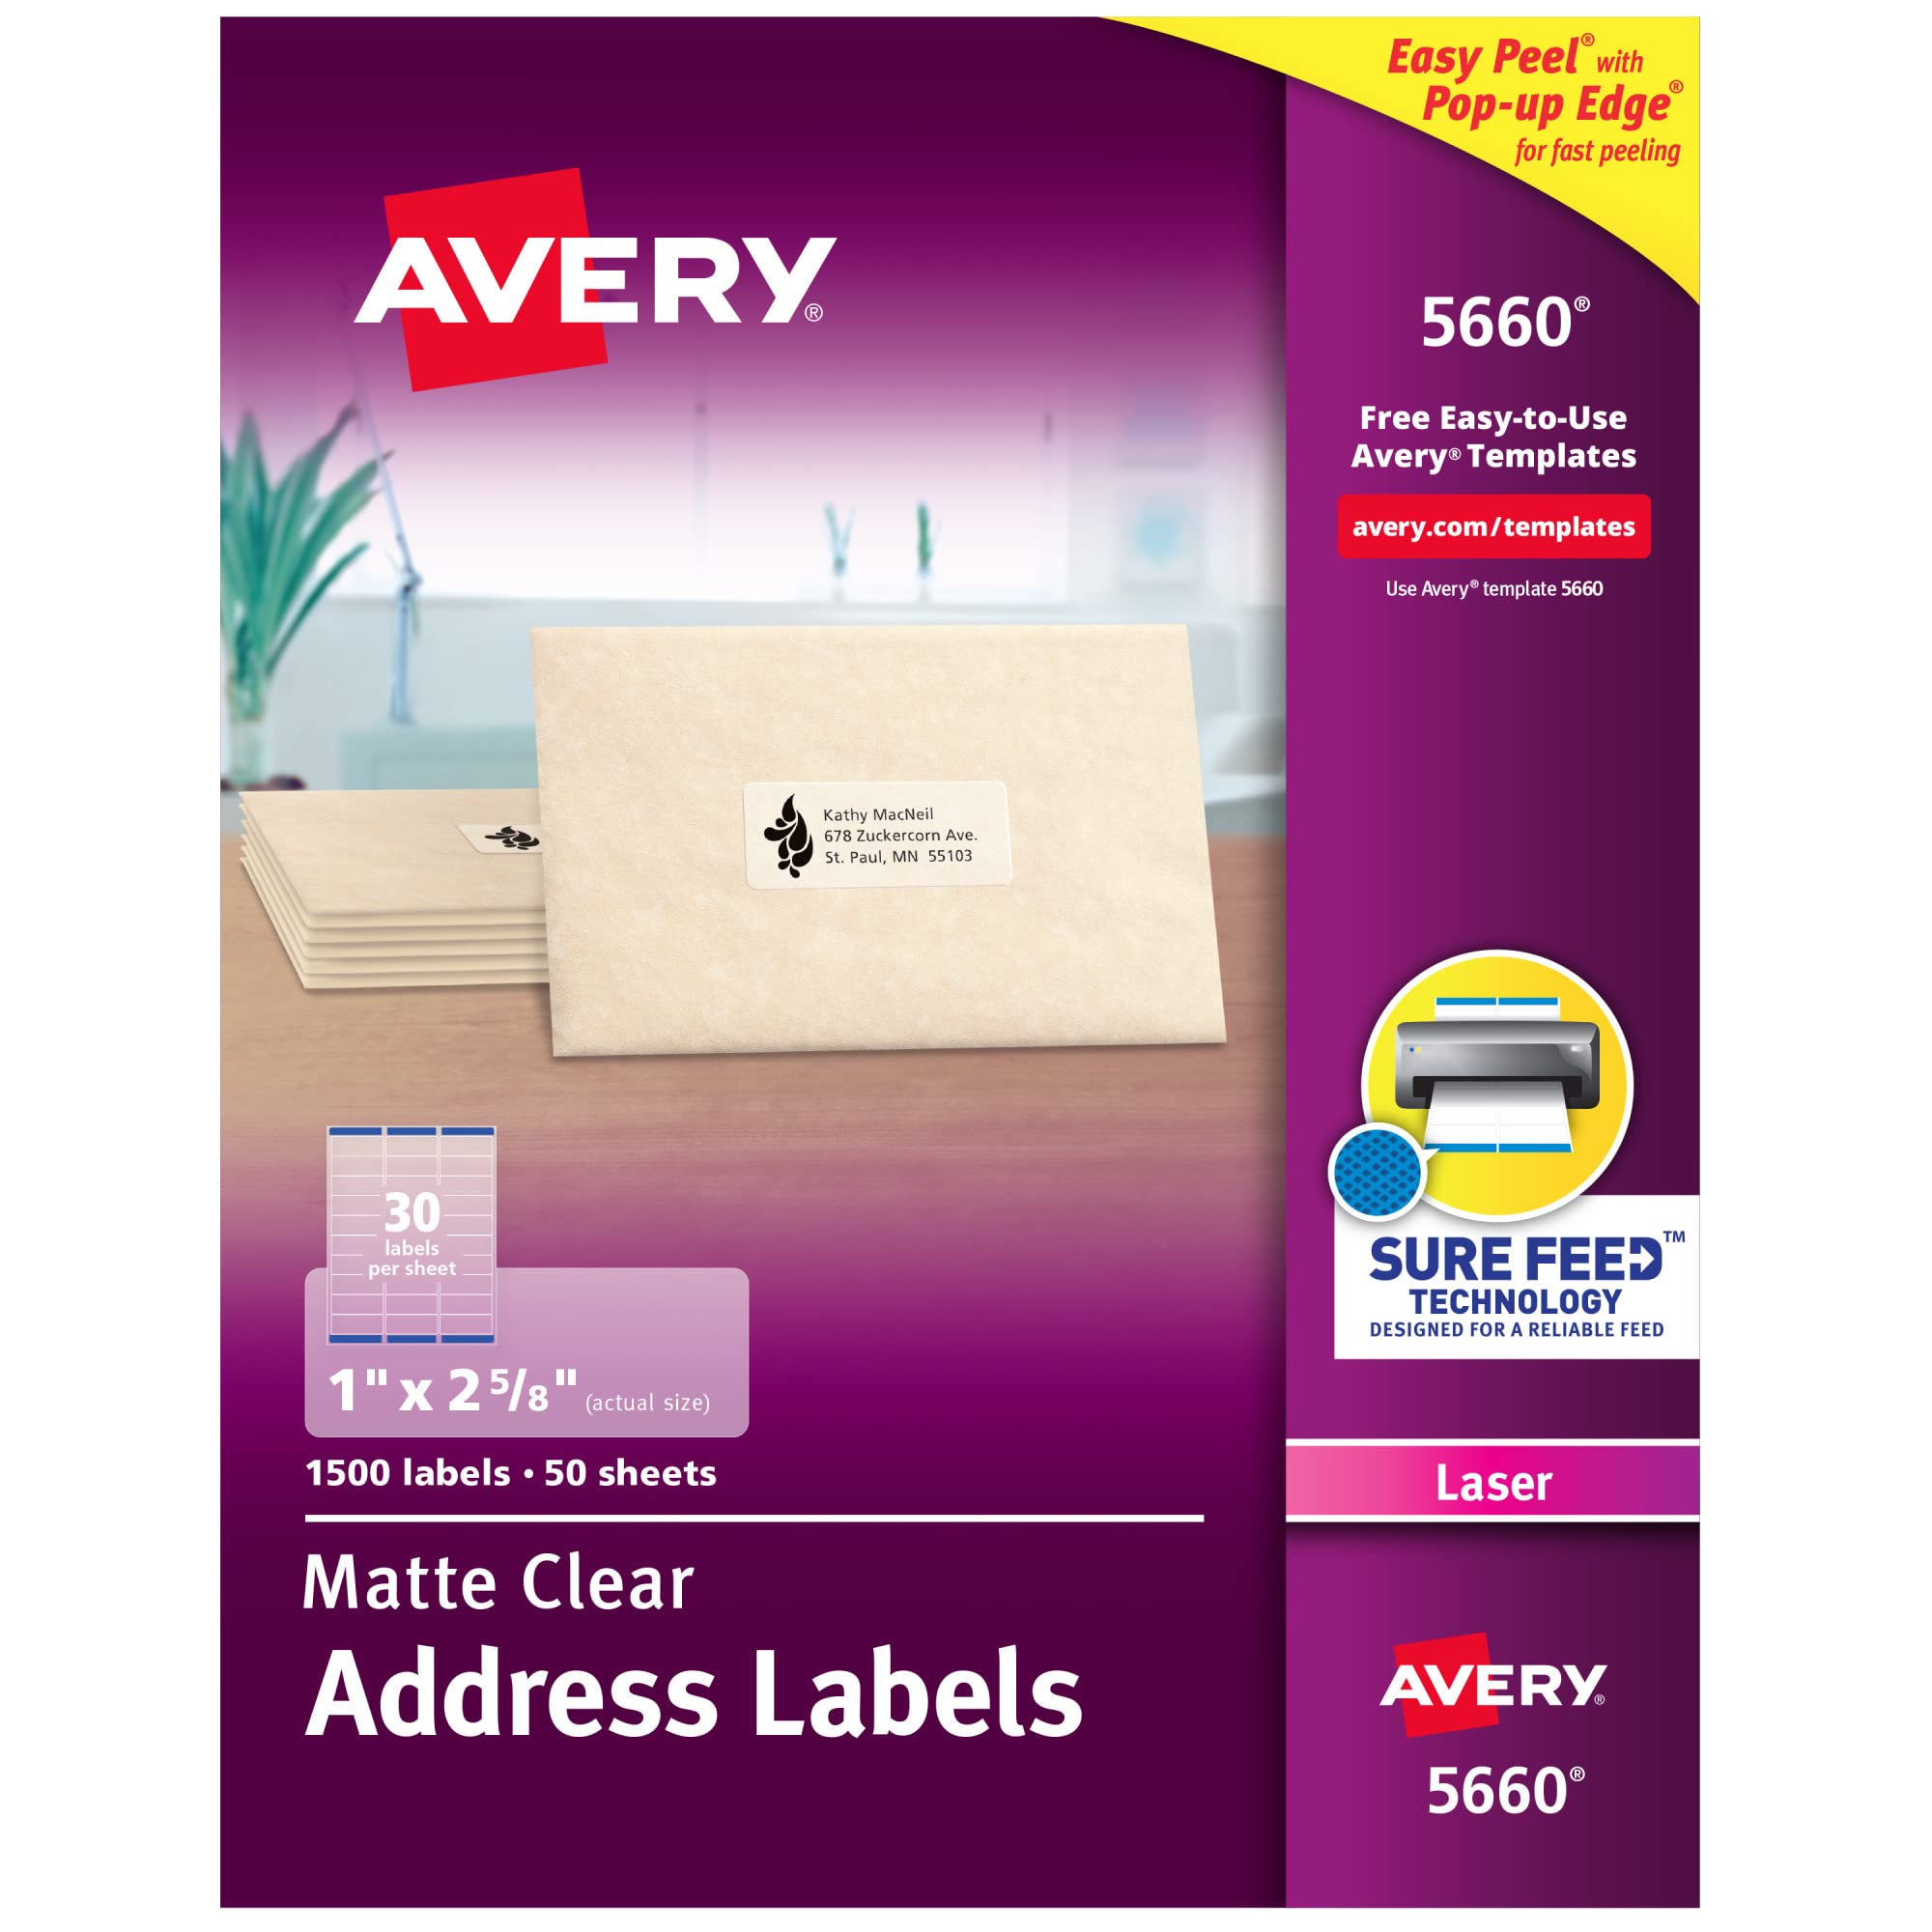 Avery Etiquetas de endereço transparentes fáceis de descascar para impressoras a laser 1'' x 2-5/8''